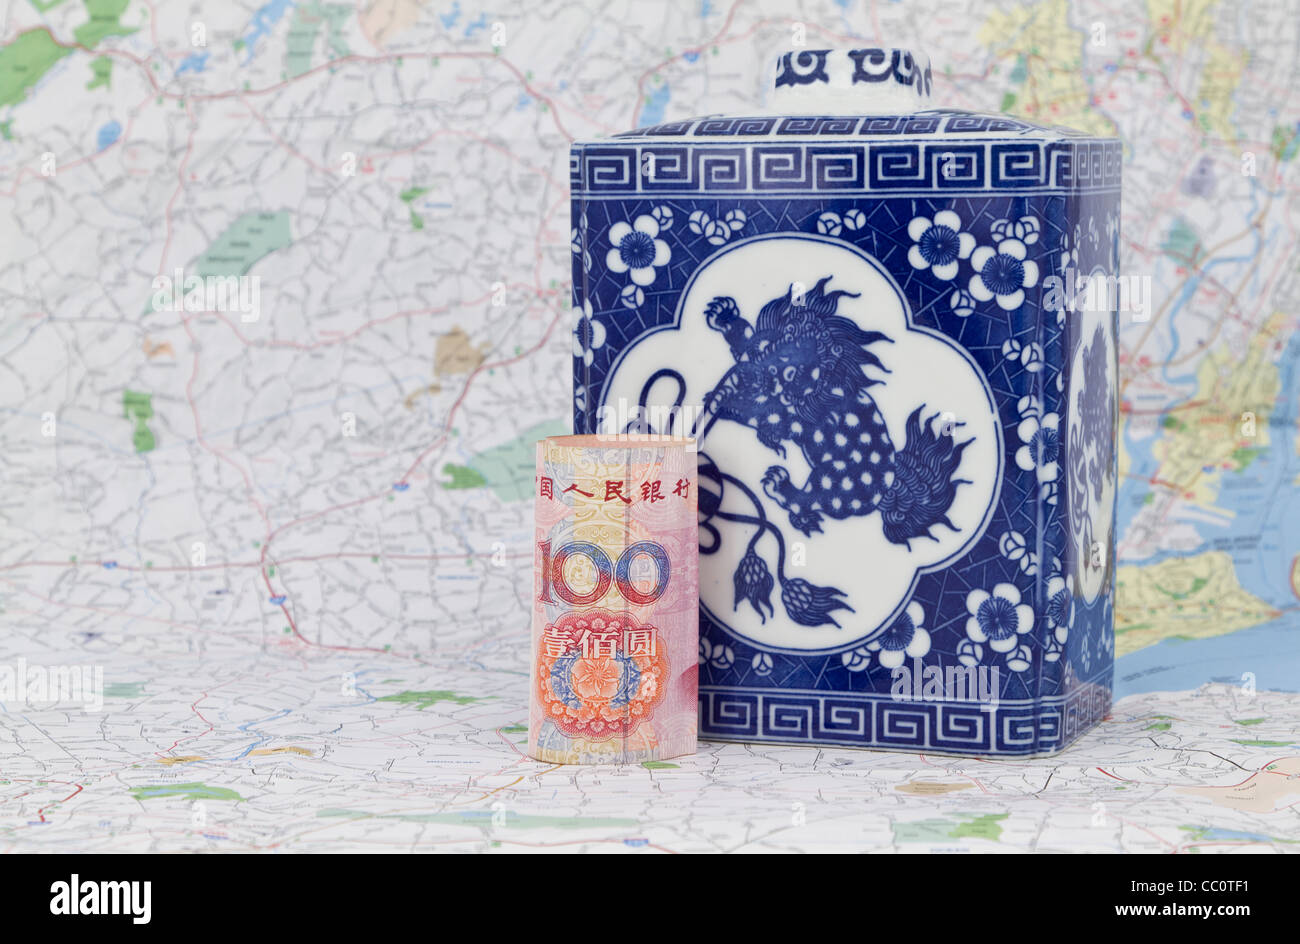 Le bureau placé sur une carte en face d'un antique porcelaine chinoise sert à symboliser le marché chinois de l'influence. Banque D'Images